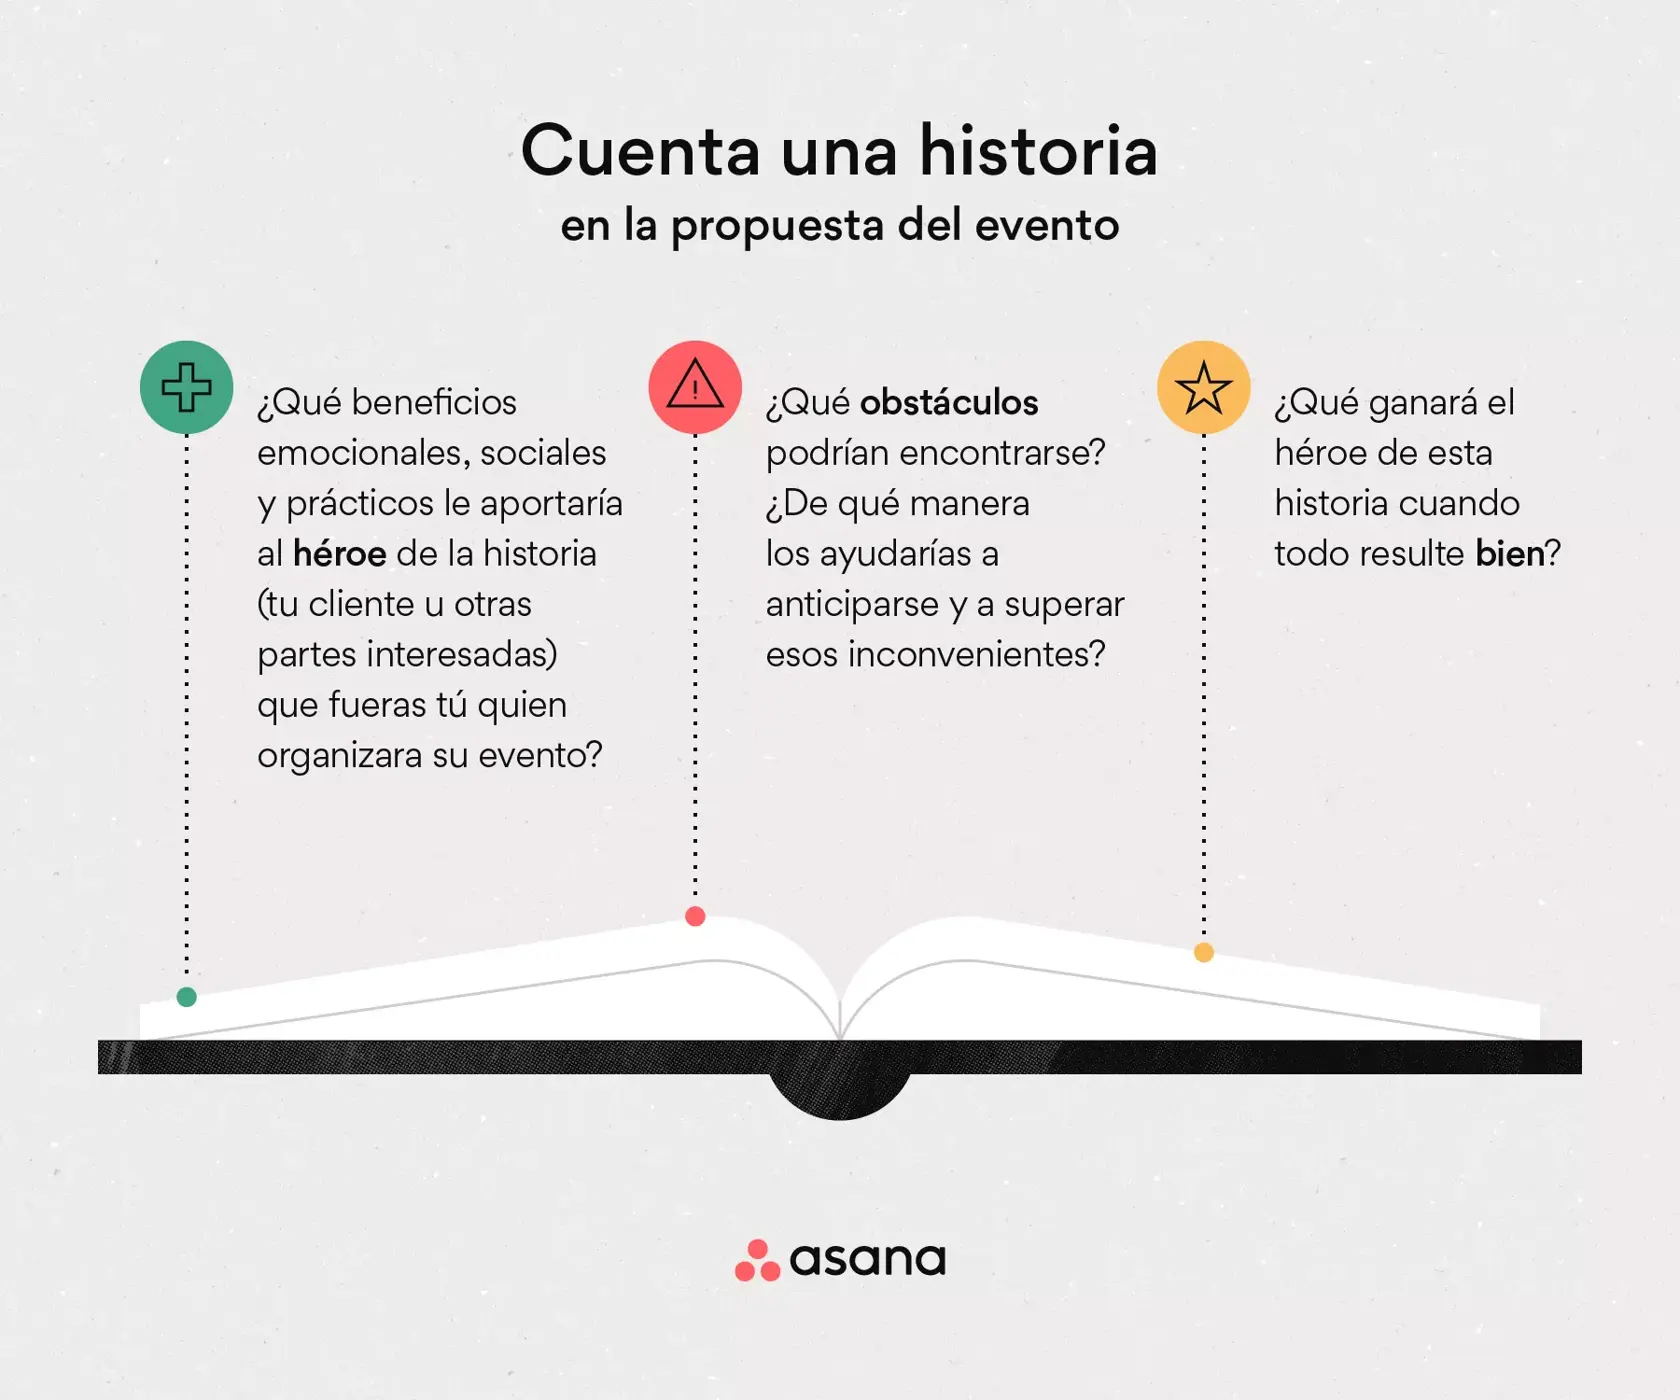 [Ilustración integrada] Cuenta una historia en la propuesta del evento (infografía)